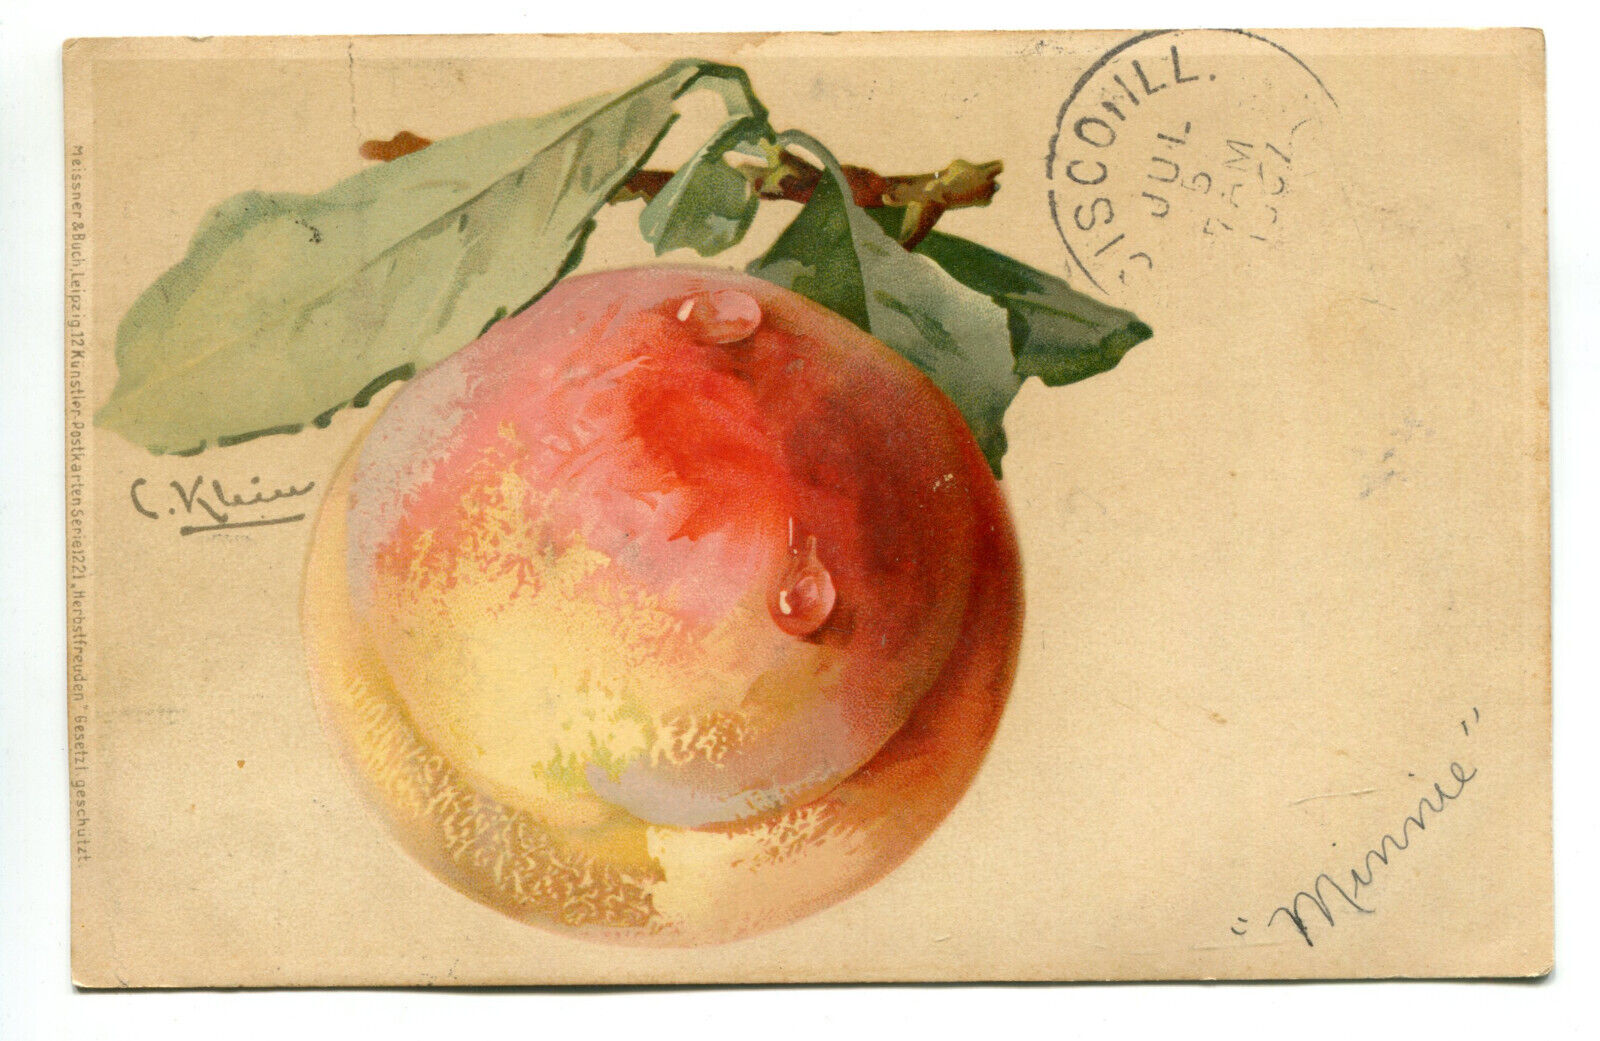 Peach by Artist C. Klein Vintage Postcard